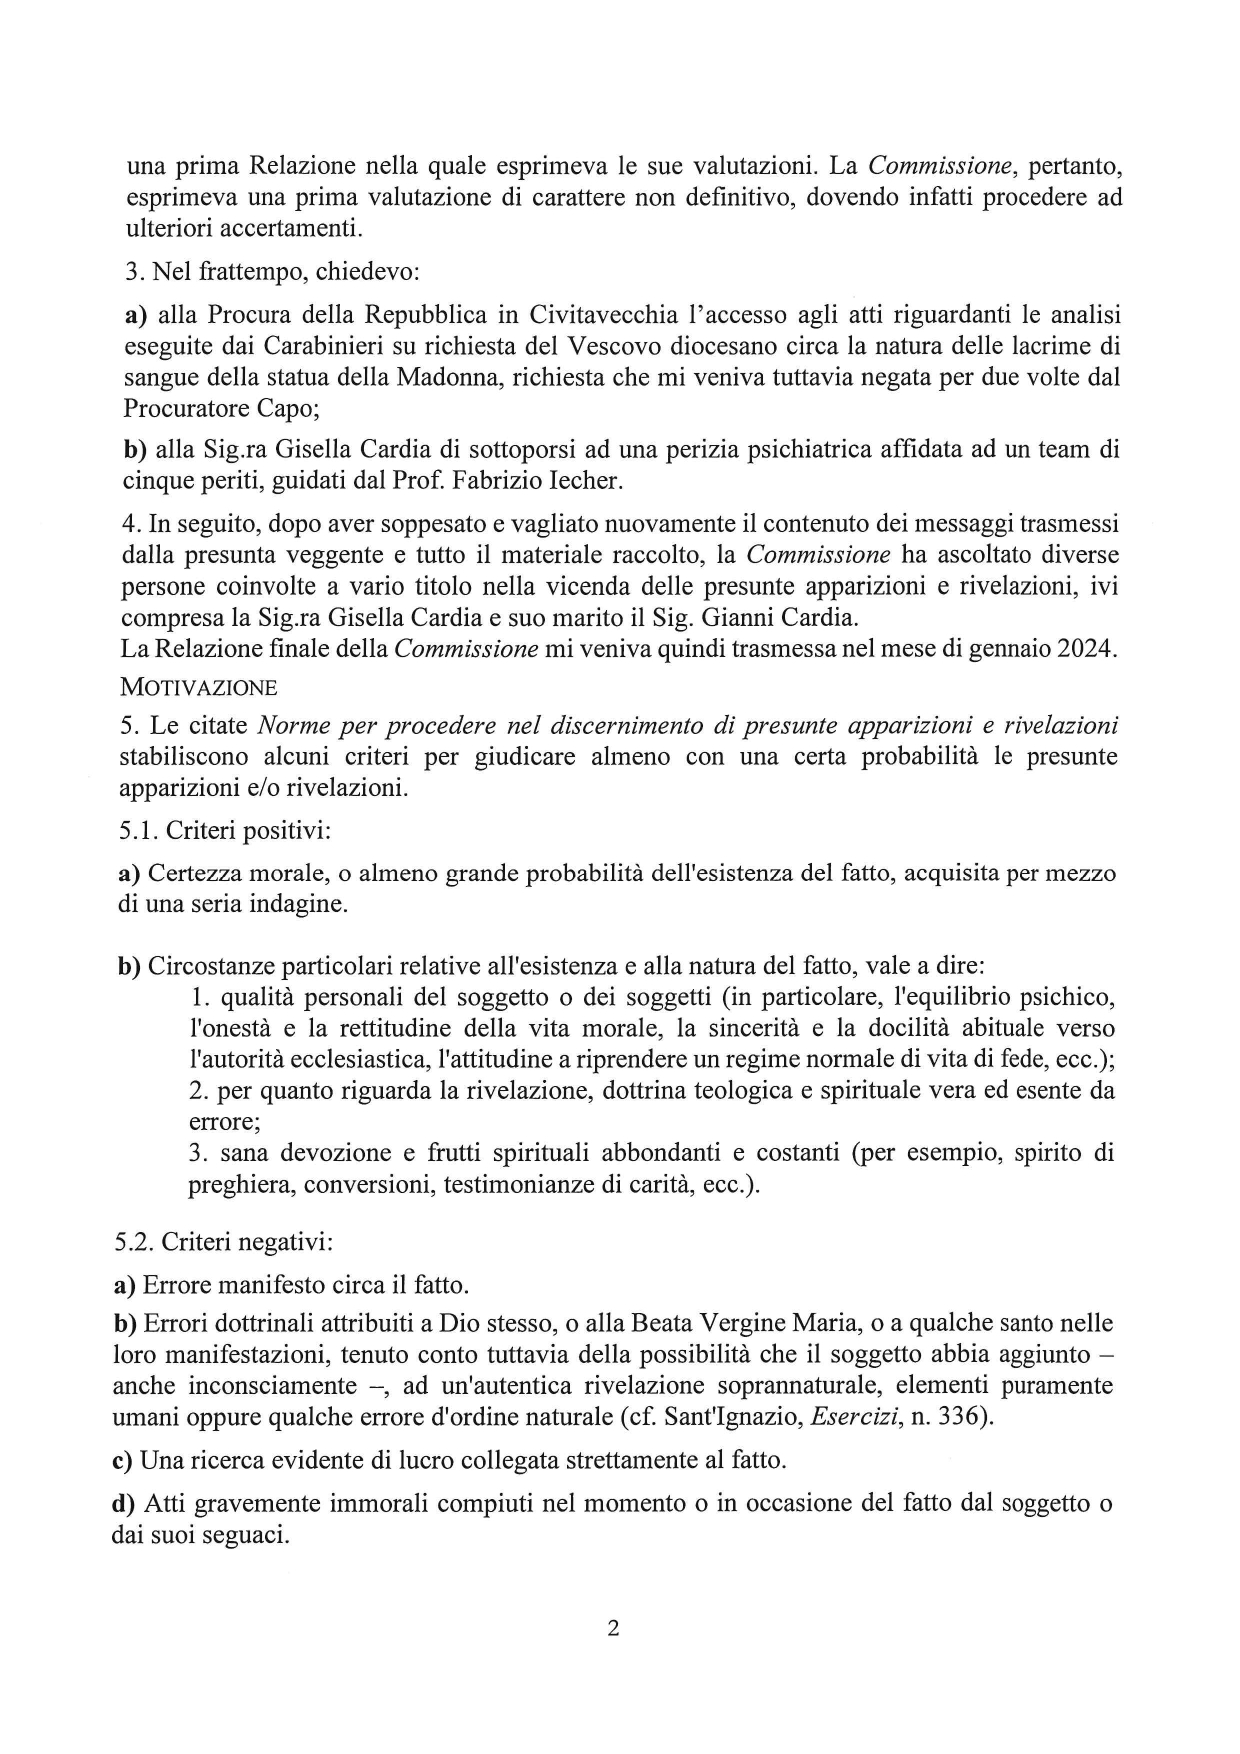 Decreto-Trevignano_240306_094058_page-0002 Decreto su Presunte apparizioni Trevignano (RM)